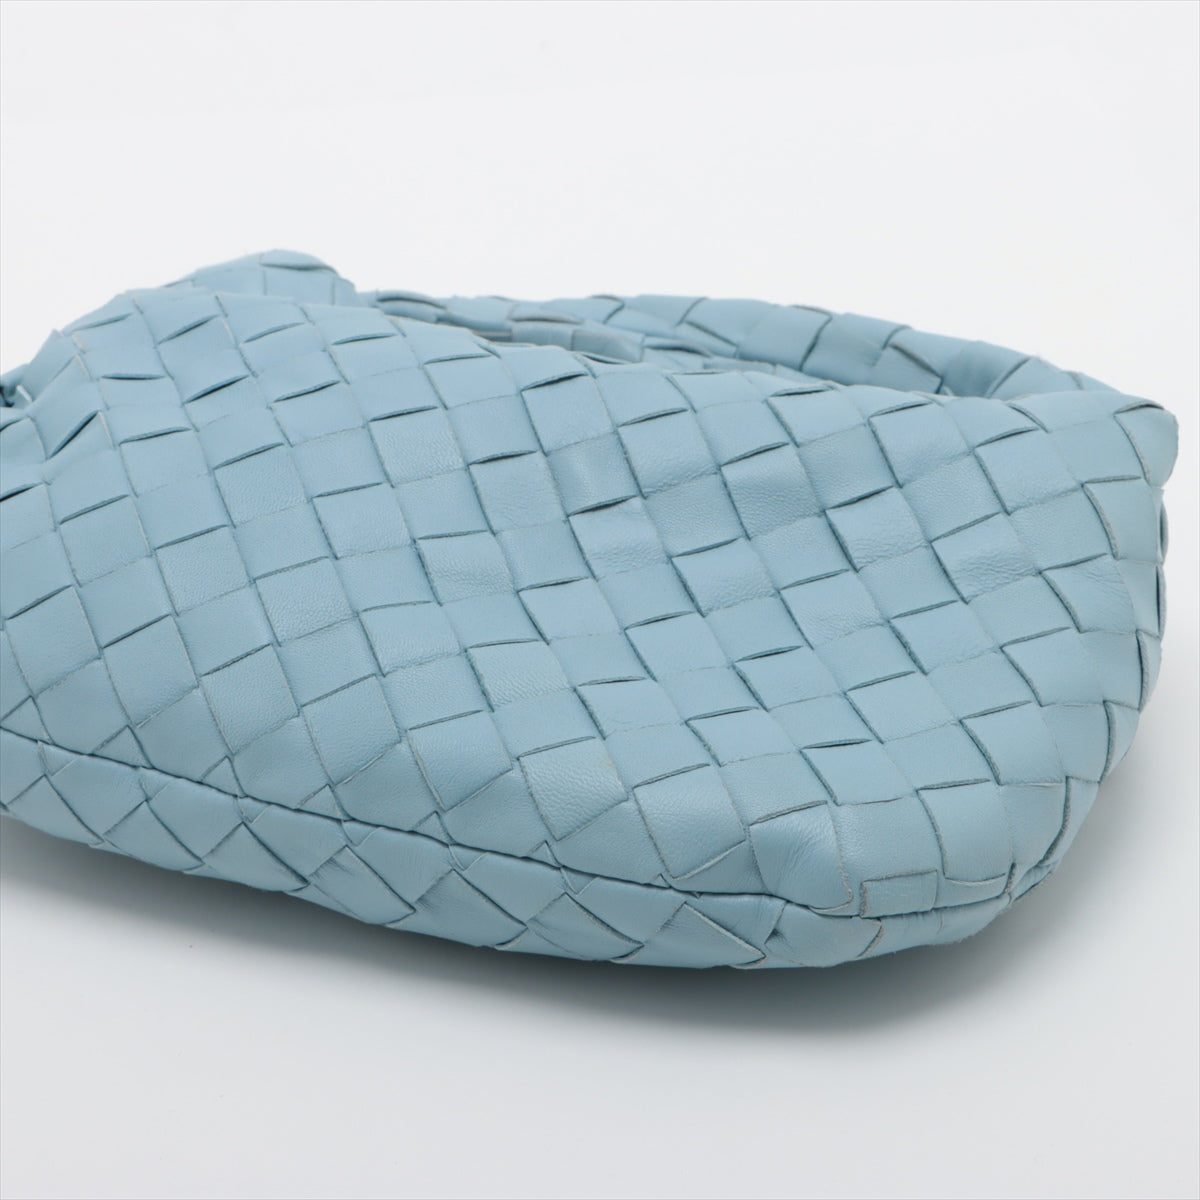 【Points 5 times! 3/4 20h~】 【 Secondary】 Bottega Veneta Mini The Jodie Interlude Patent Leather Handbag Light Blue